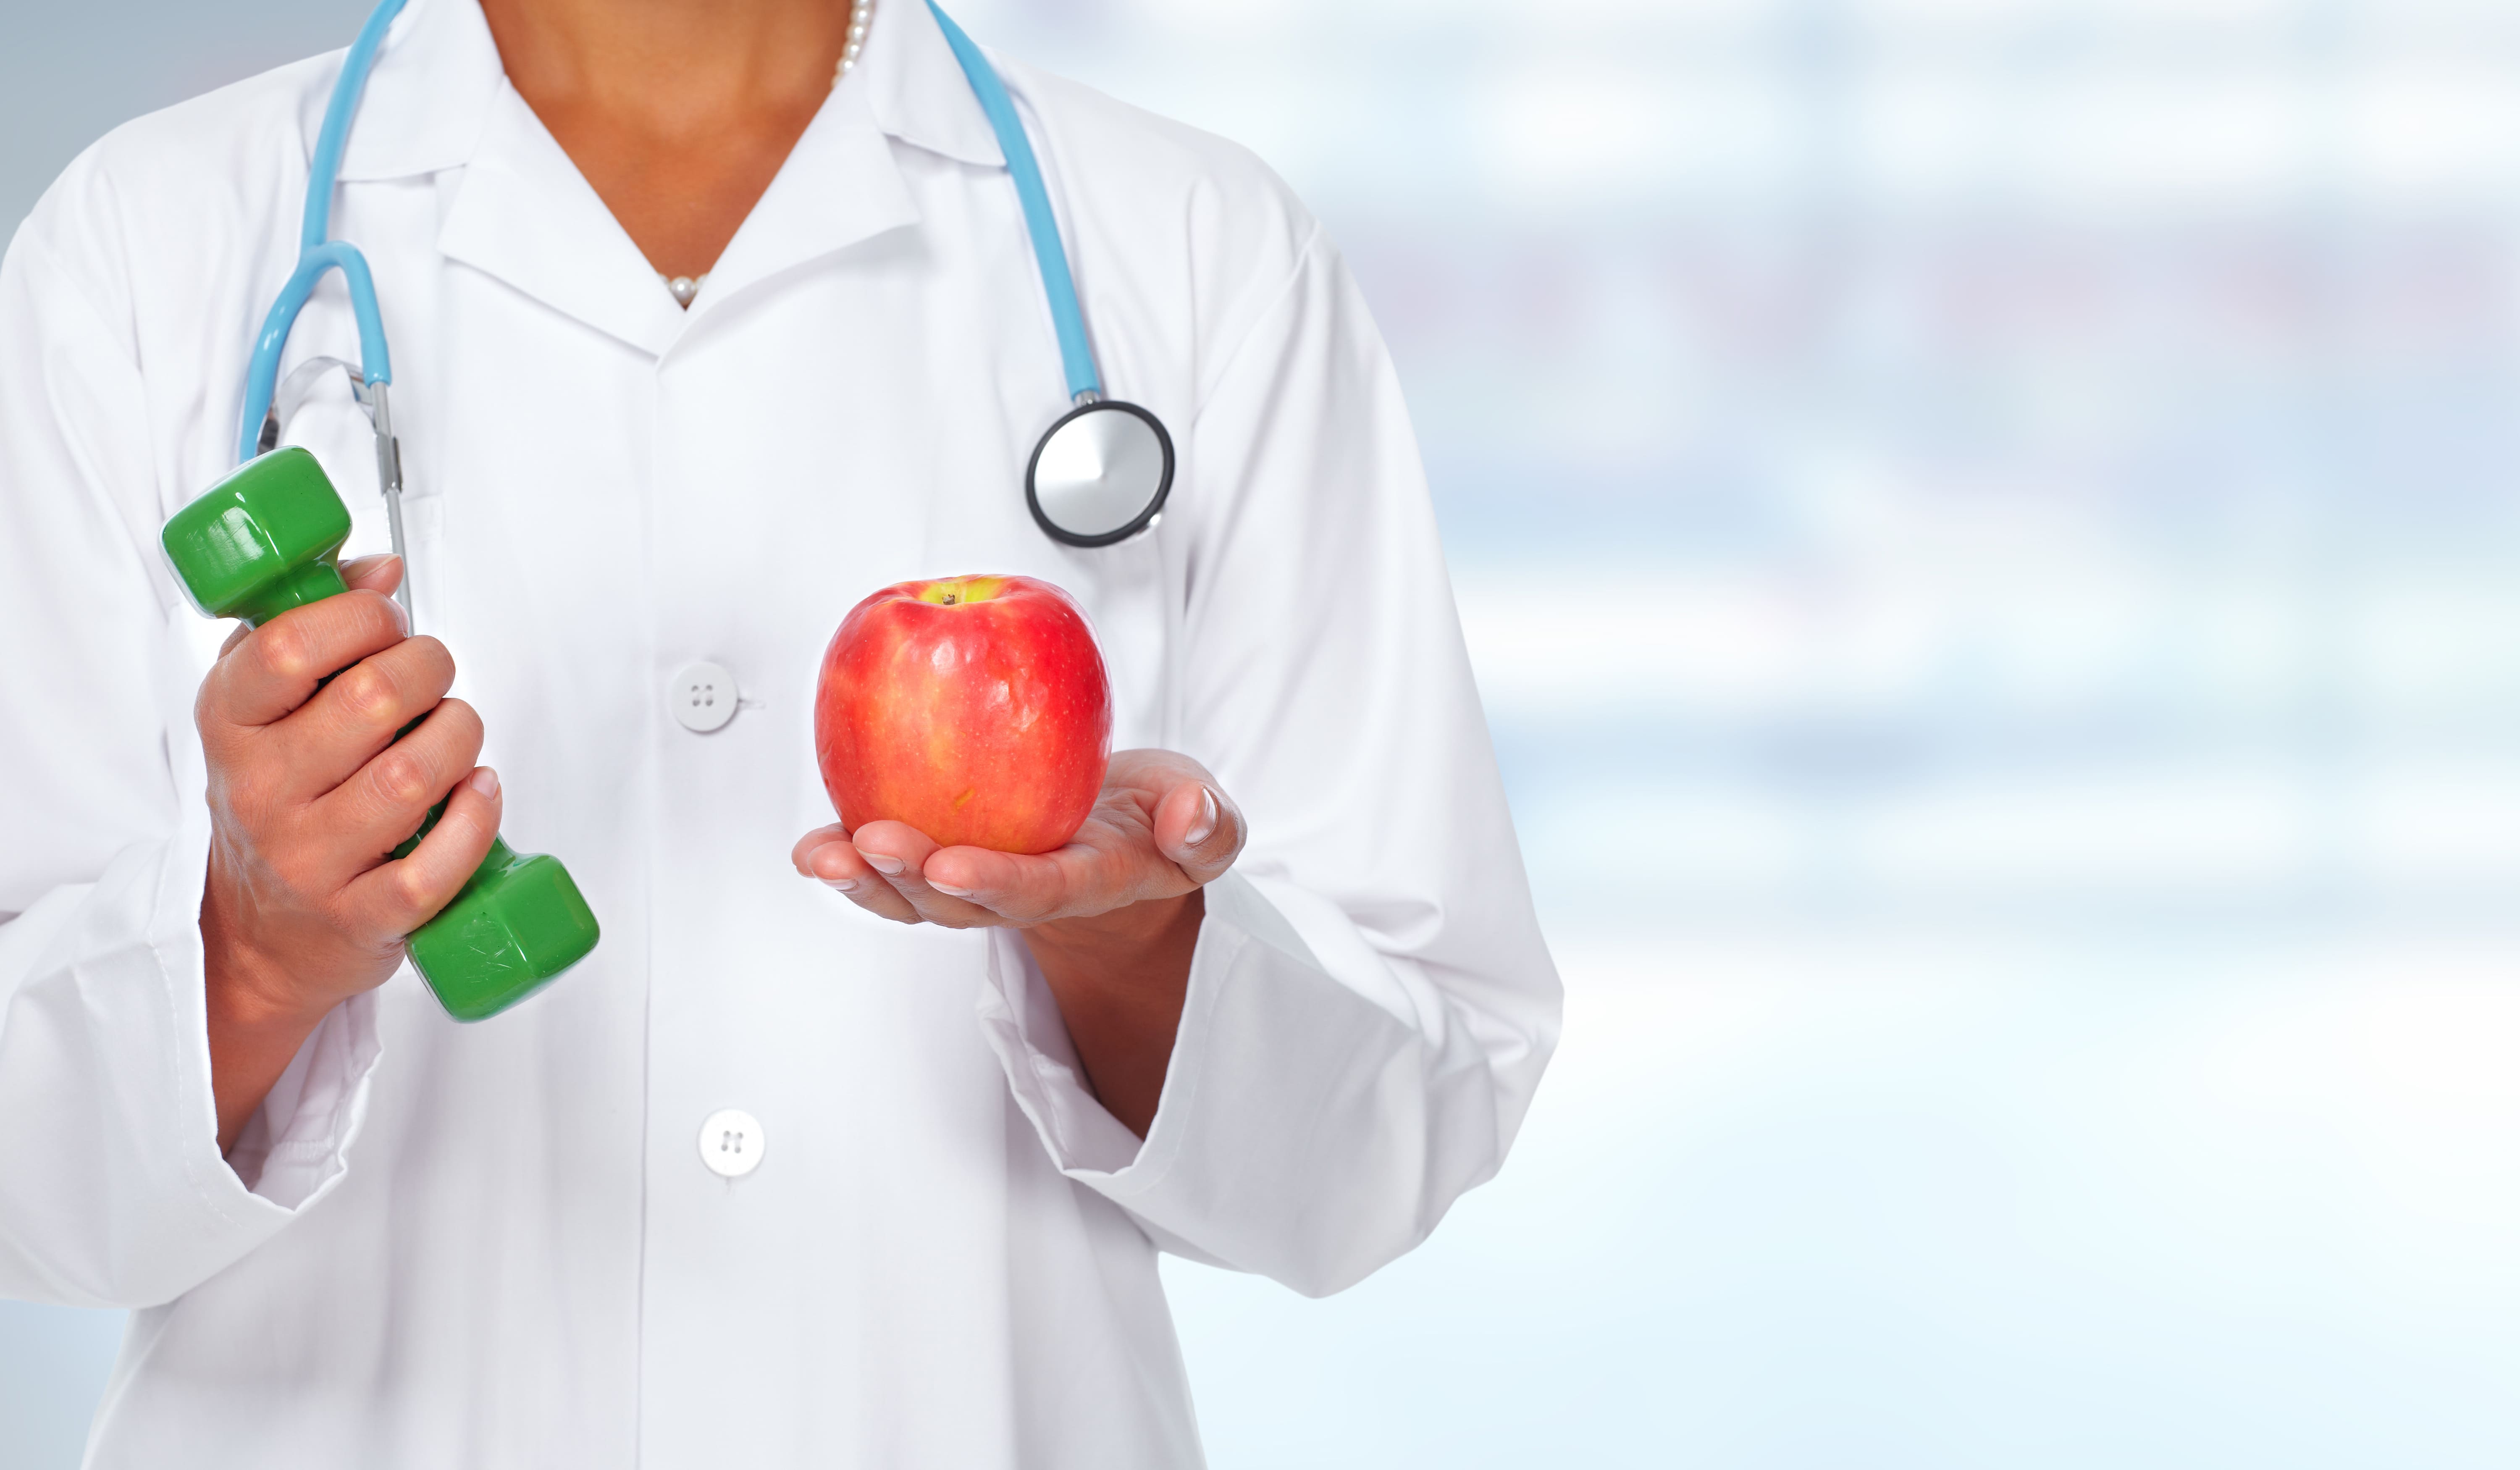 Imagem de um médico segurando um peso e uma maçã para remeter ao empreendedor que deseja abrir uma clínica de saúde esportiva